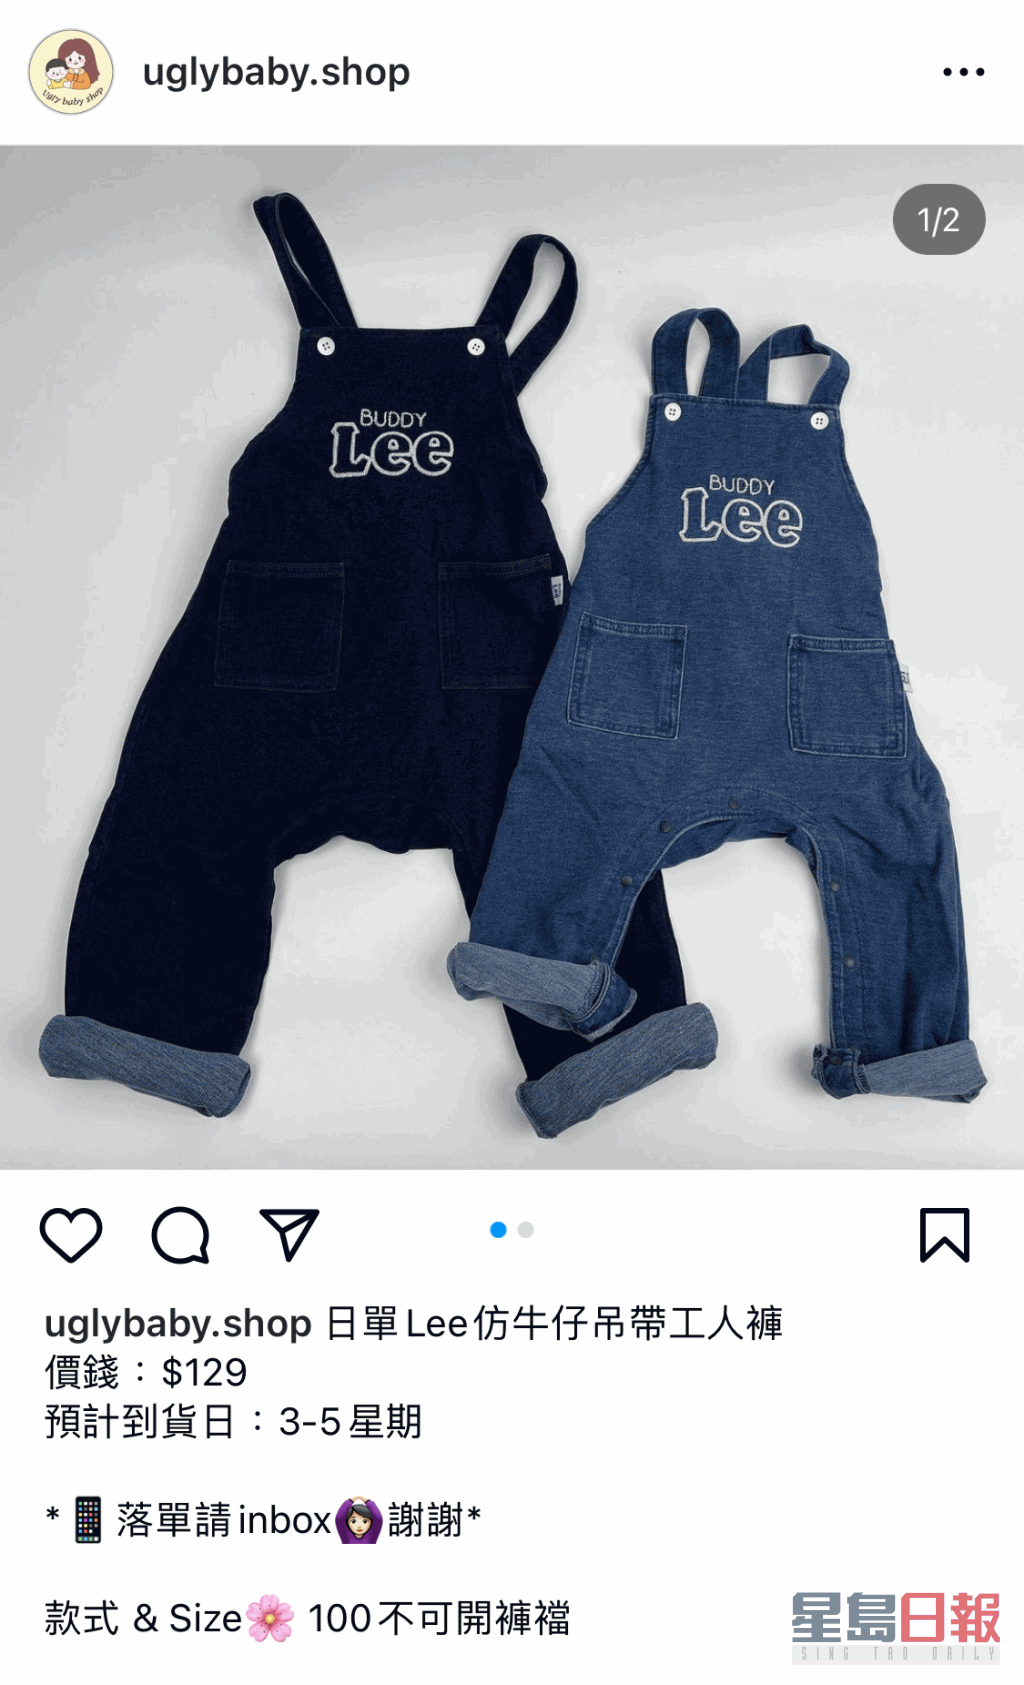 另一件童装牛件工人裤，涉冒充著名件仔品牌Lee。